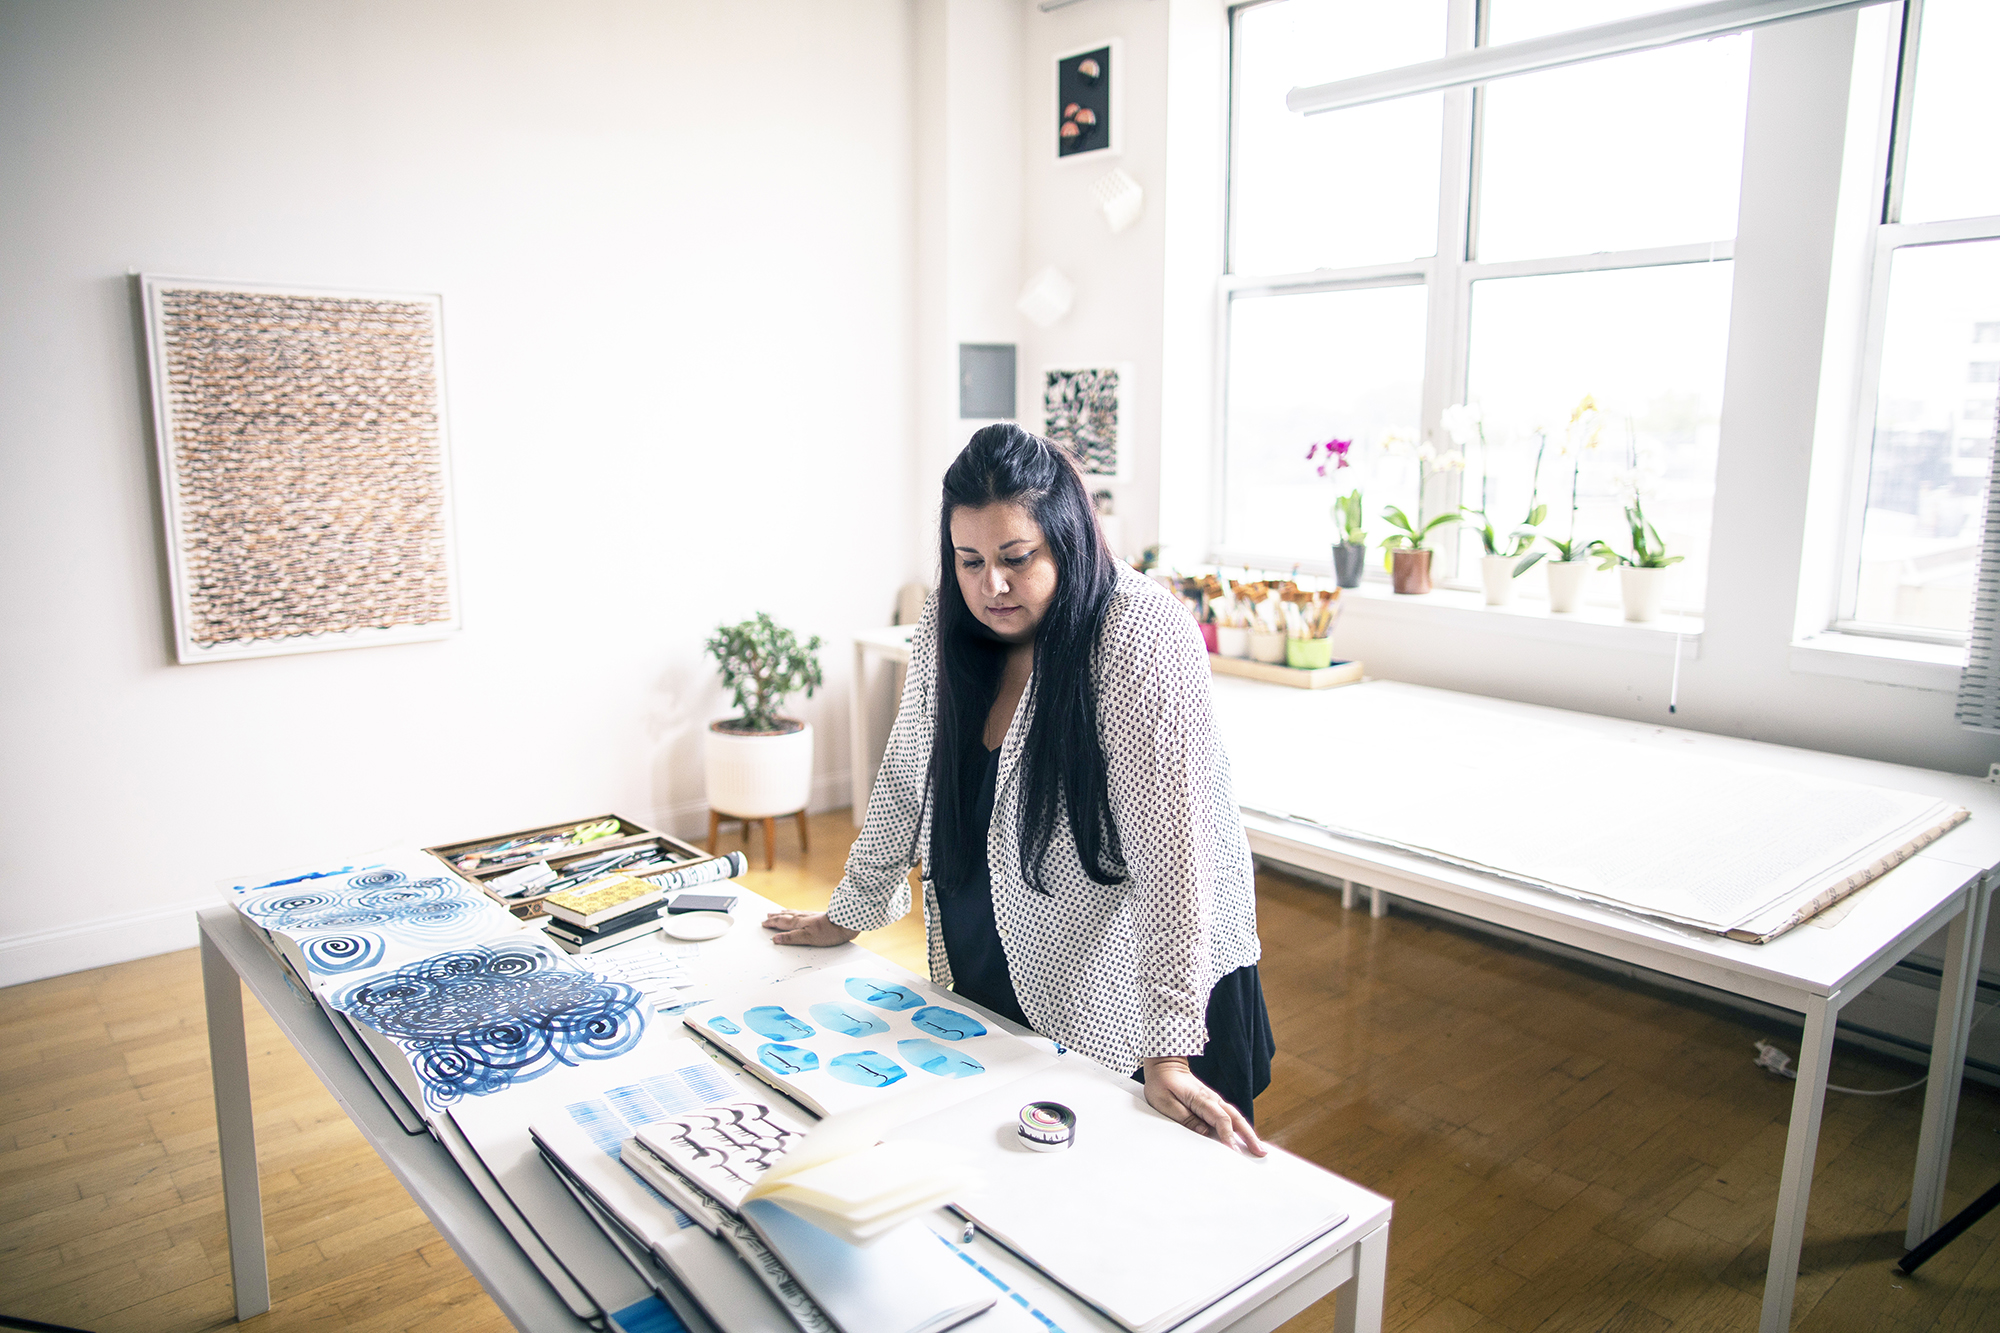 L'artiste dans son studio inondé de lumière. Elle a de longs cheveux bruns. Elle regarde quelques unes de ses créations dans des brochures, posées sur une table.